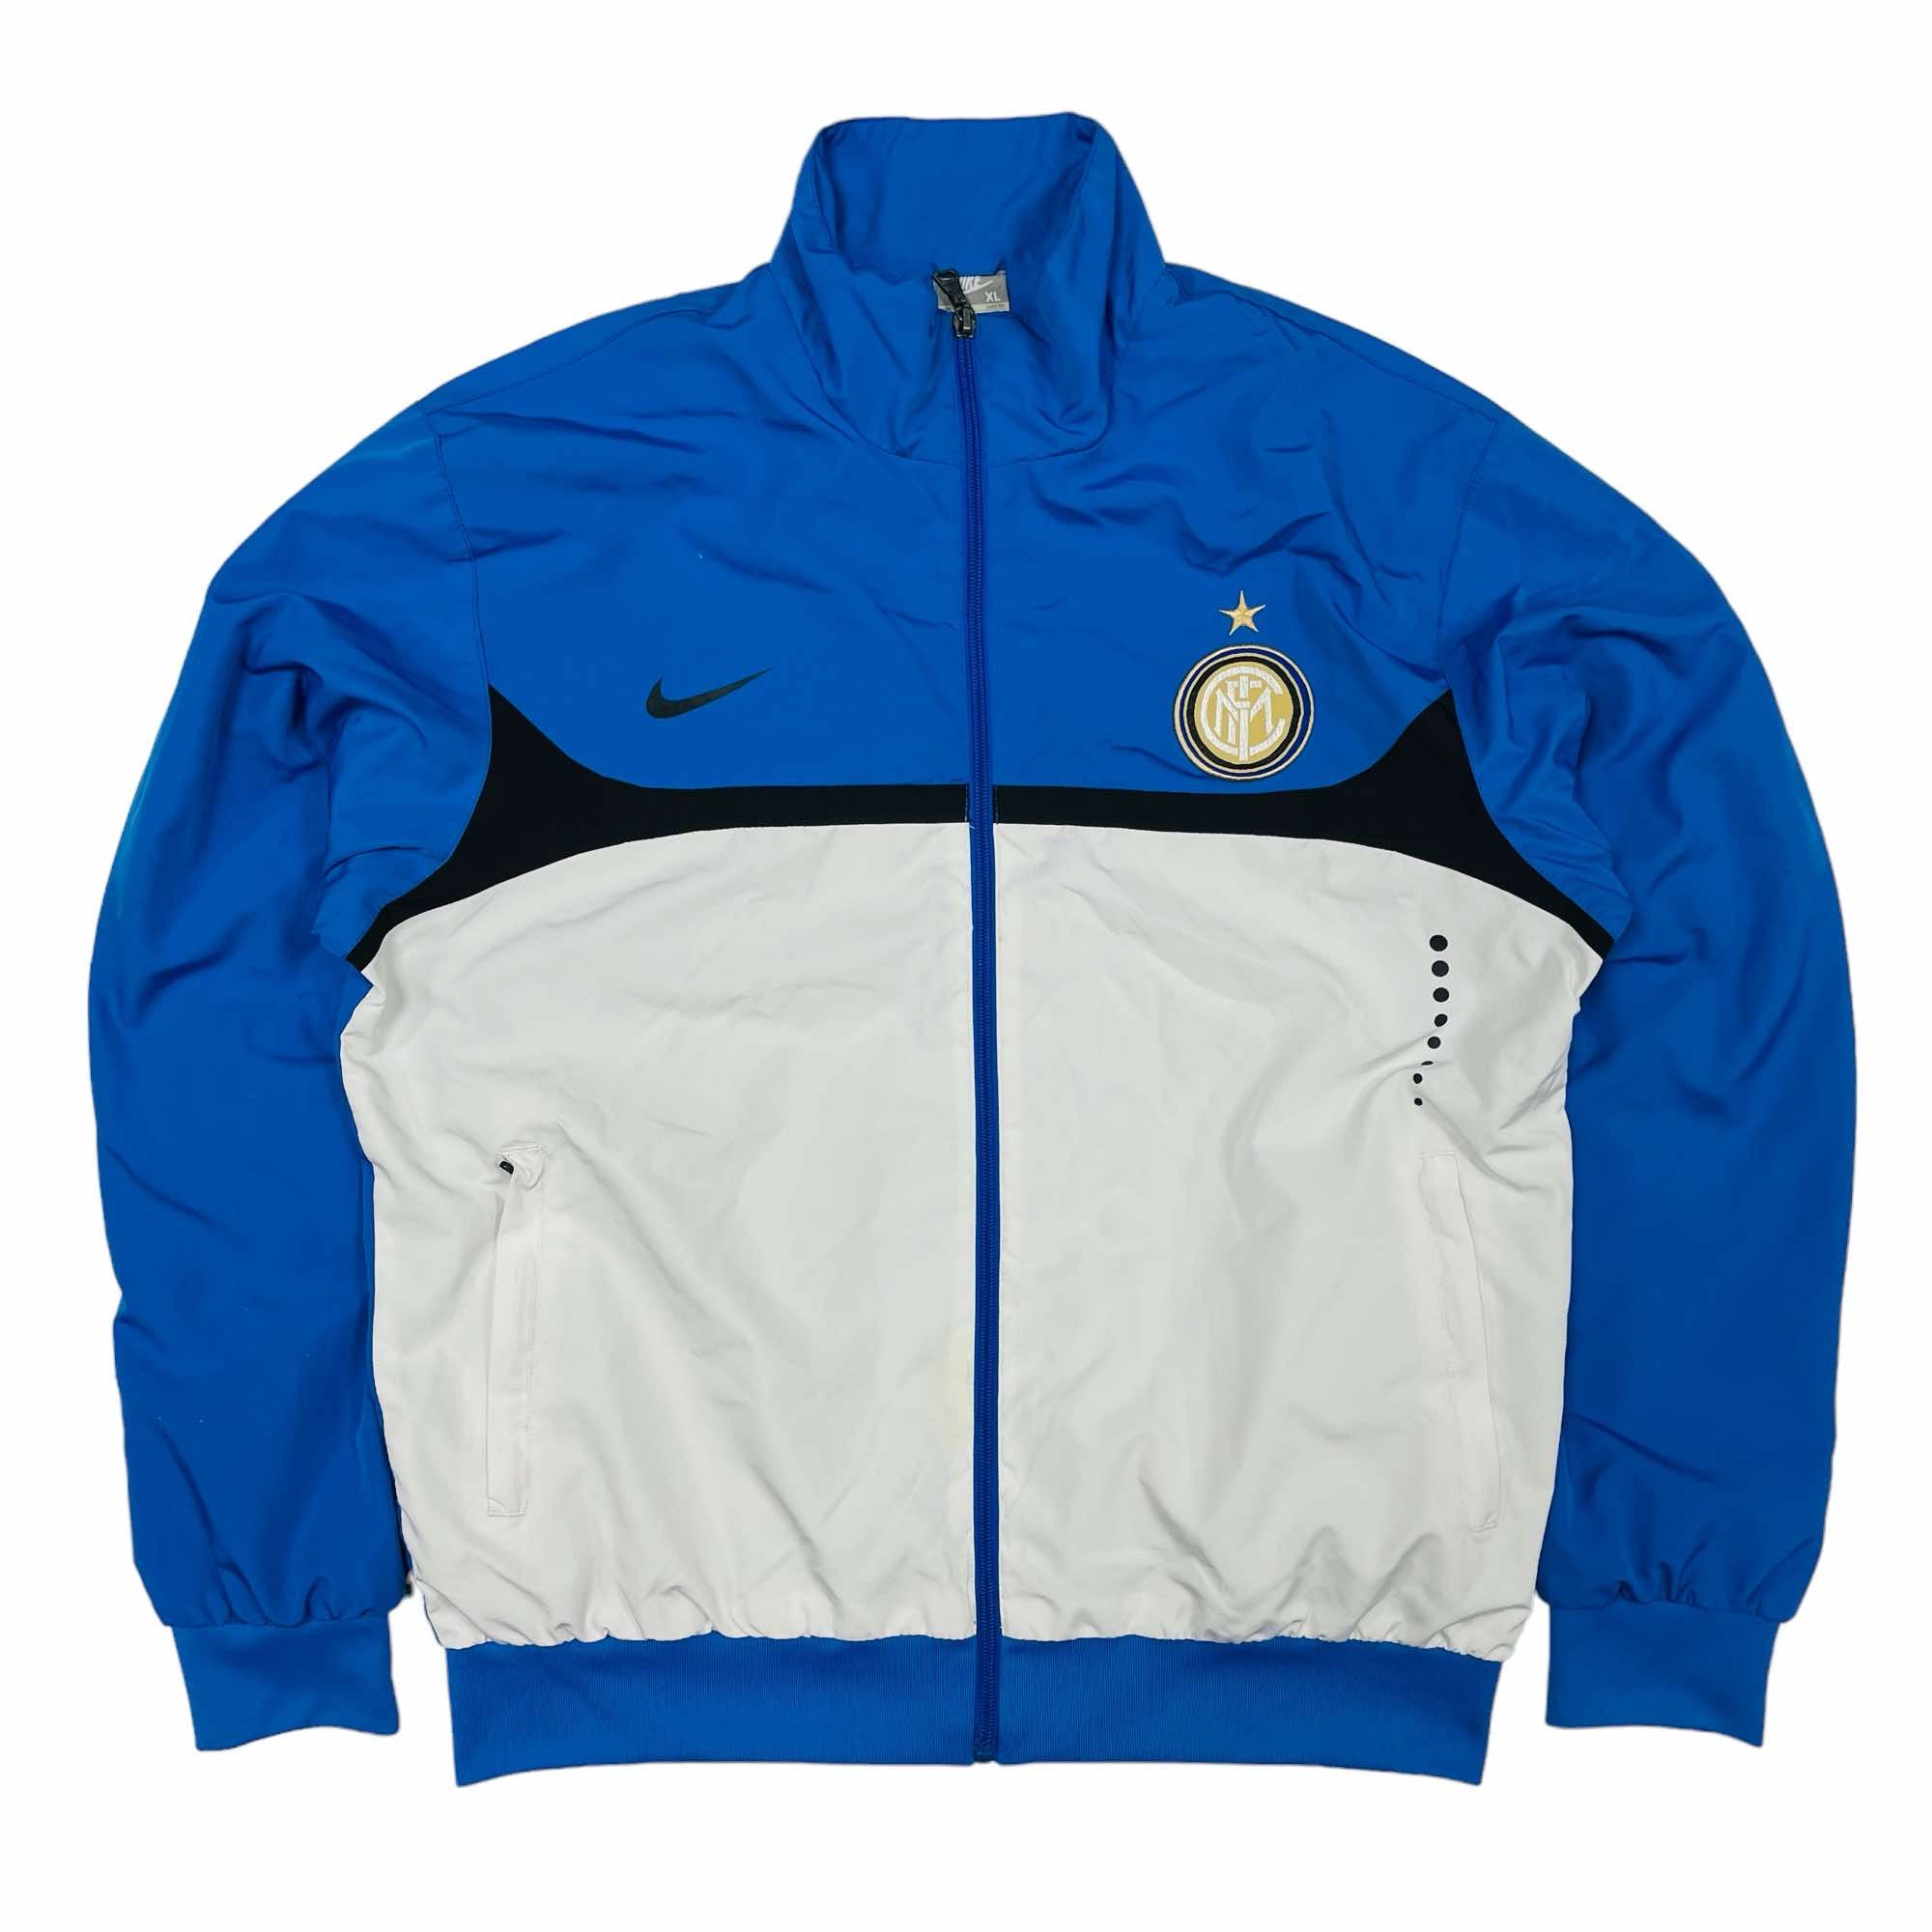 Inter Milan 2009/10 Nike Training Jacket - XL